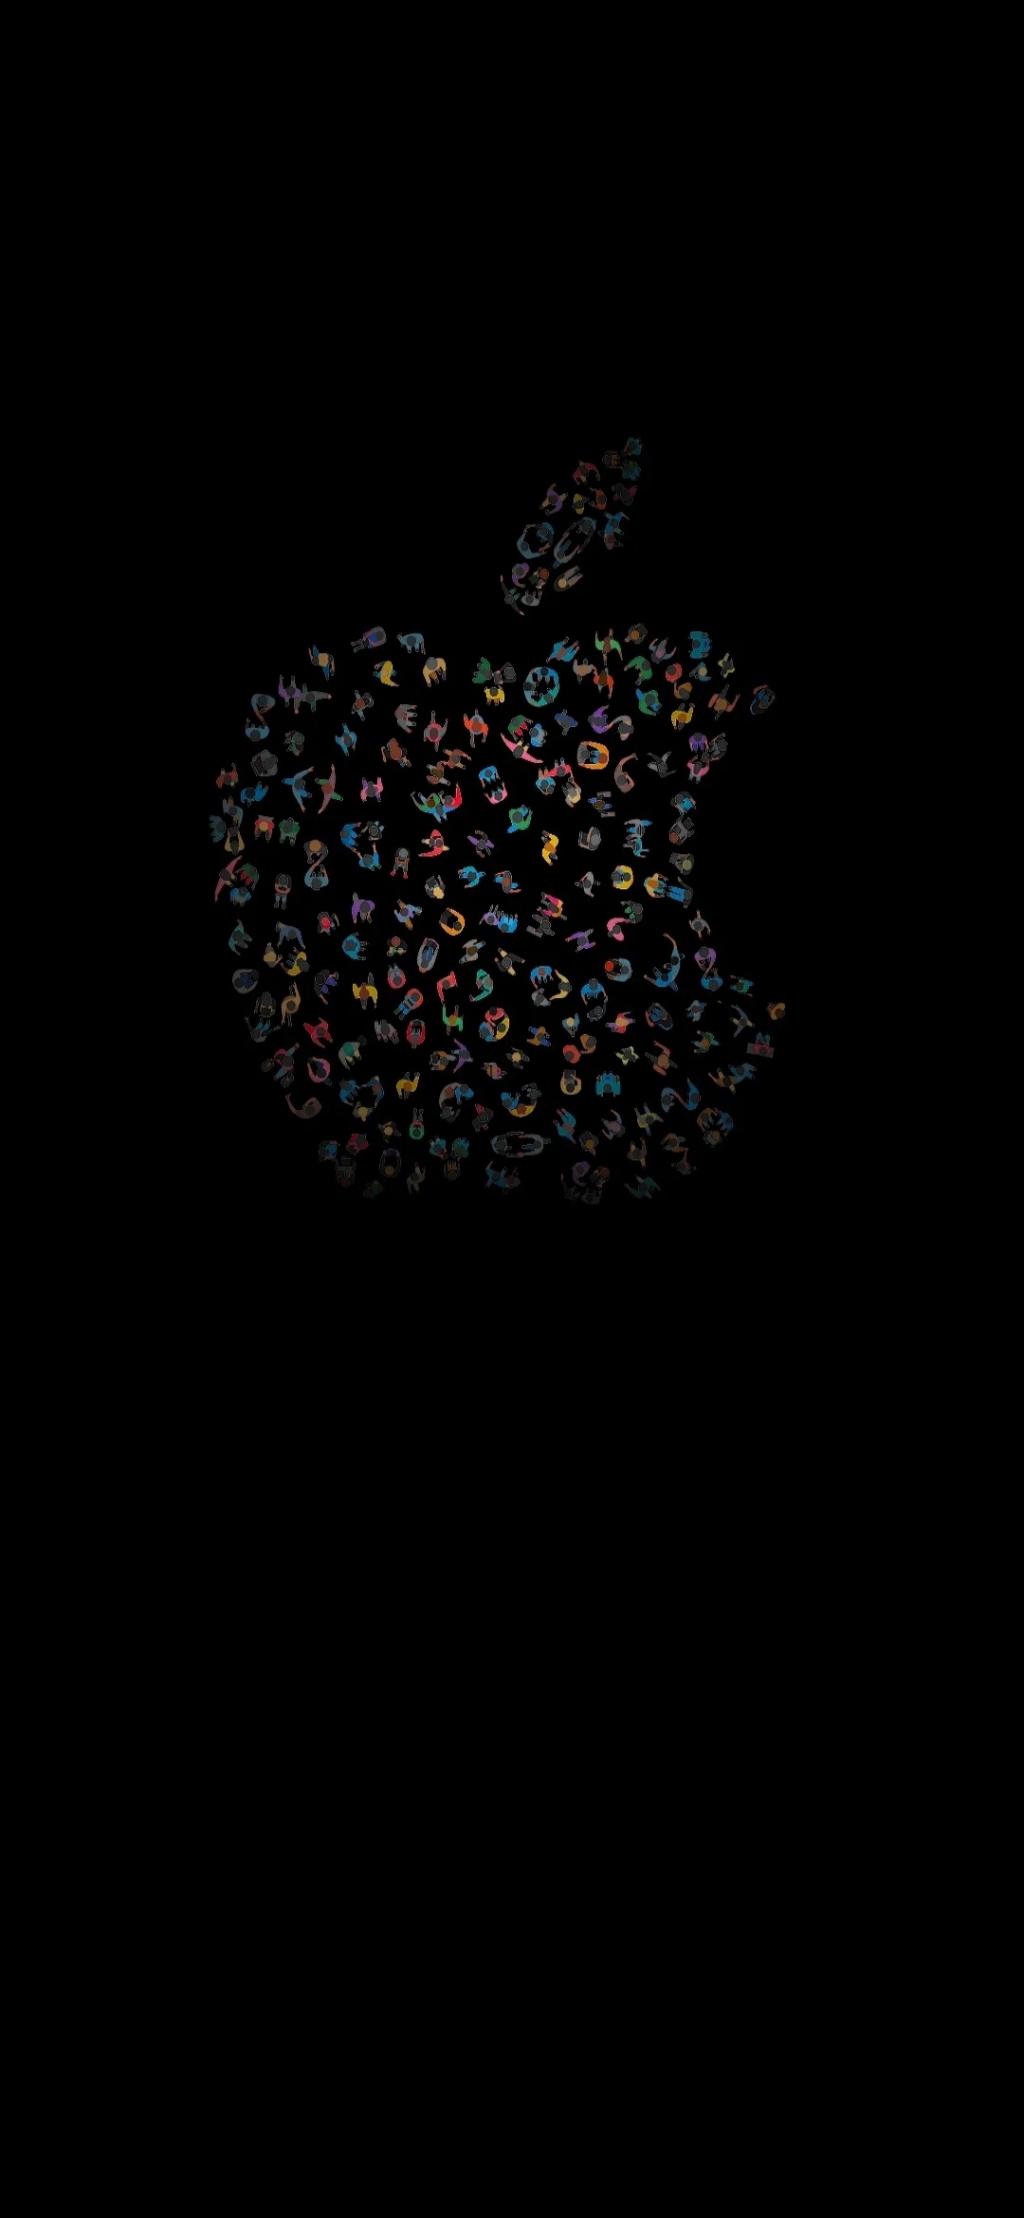 创意苹果logo纯色背景